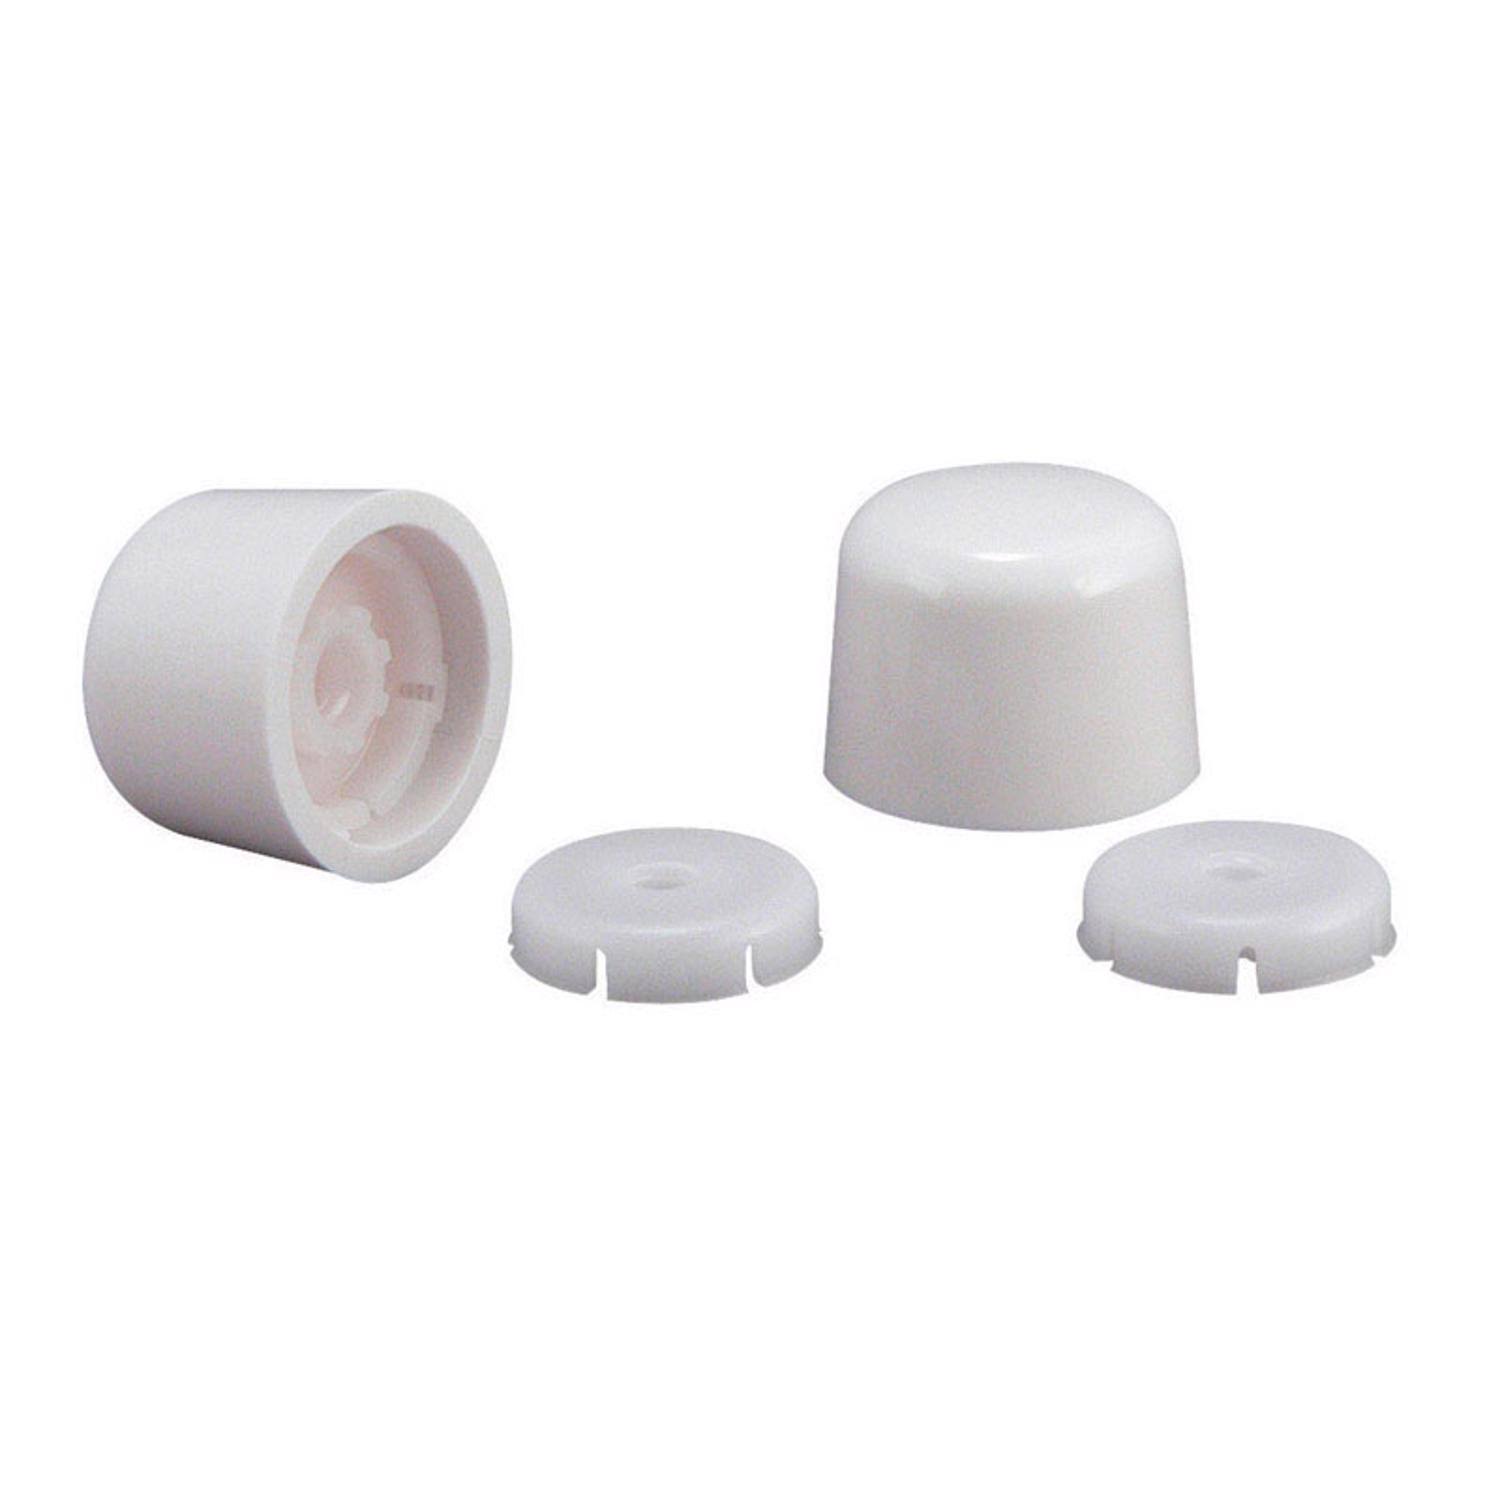 Plumb Pak Universal Decorative Toilet Bolt Caps - White